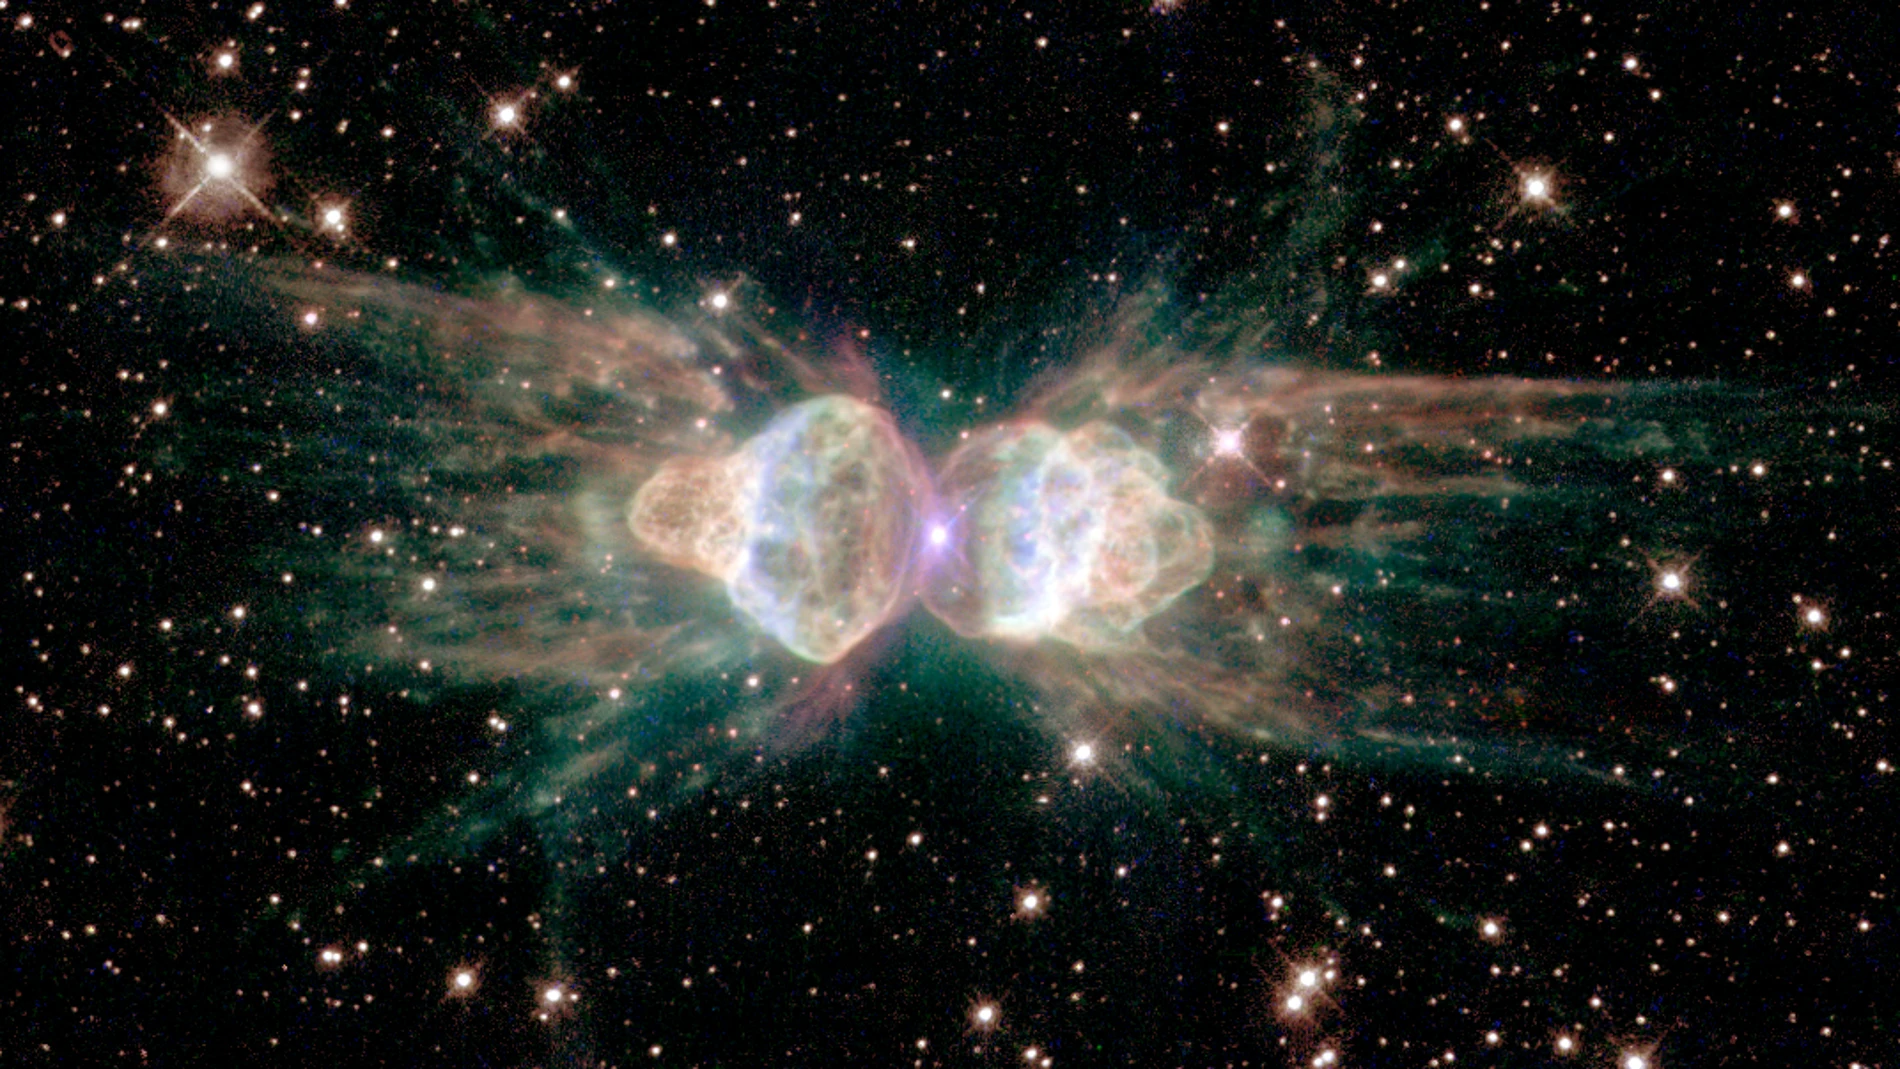 La Nebulosa de la Hormiga muestra intrigantes patrones simétricos en los lóbulos de gas que se expulsan de una estrella moribunda similar al Sol en su centro. Imagen tomada el 20 de julio de 1997.